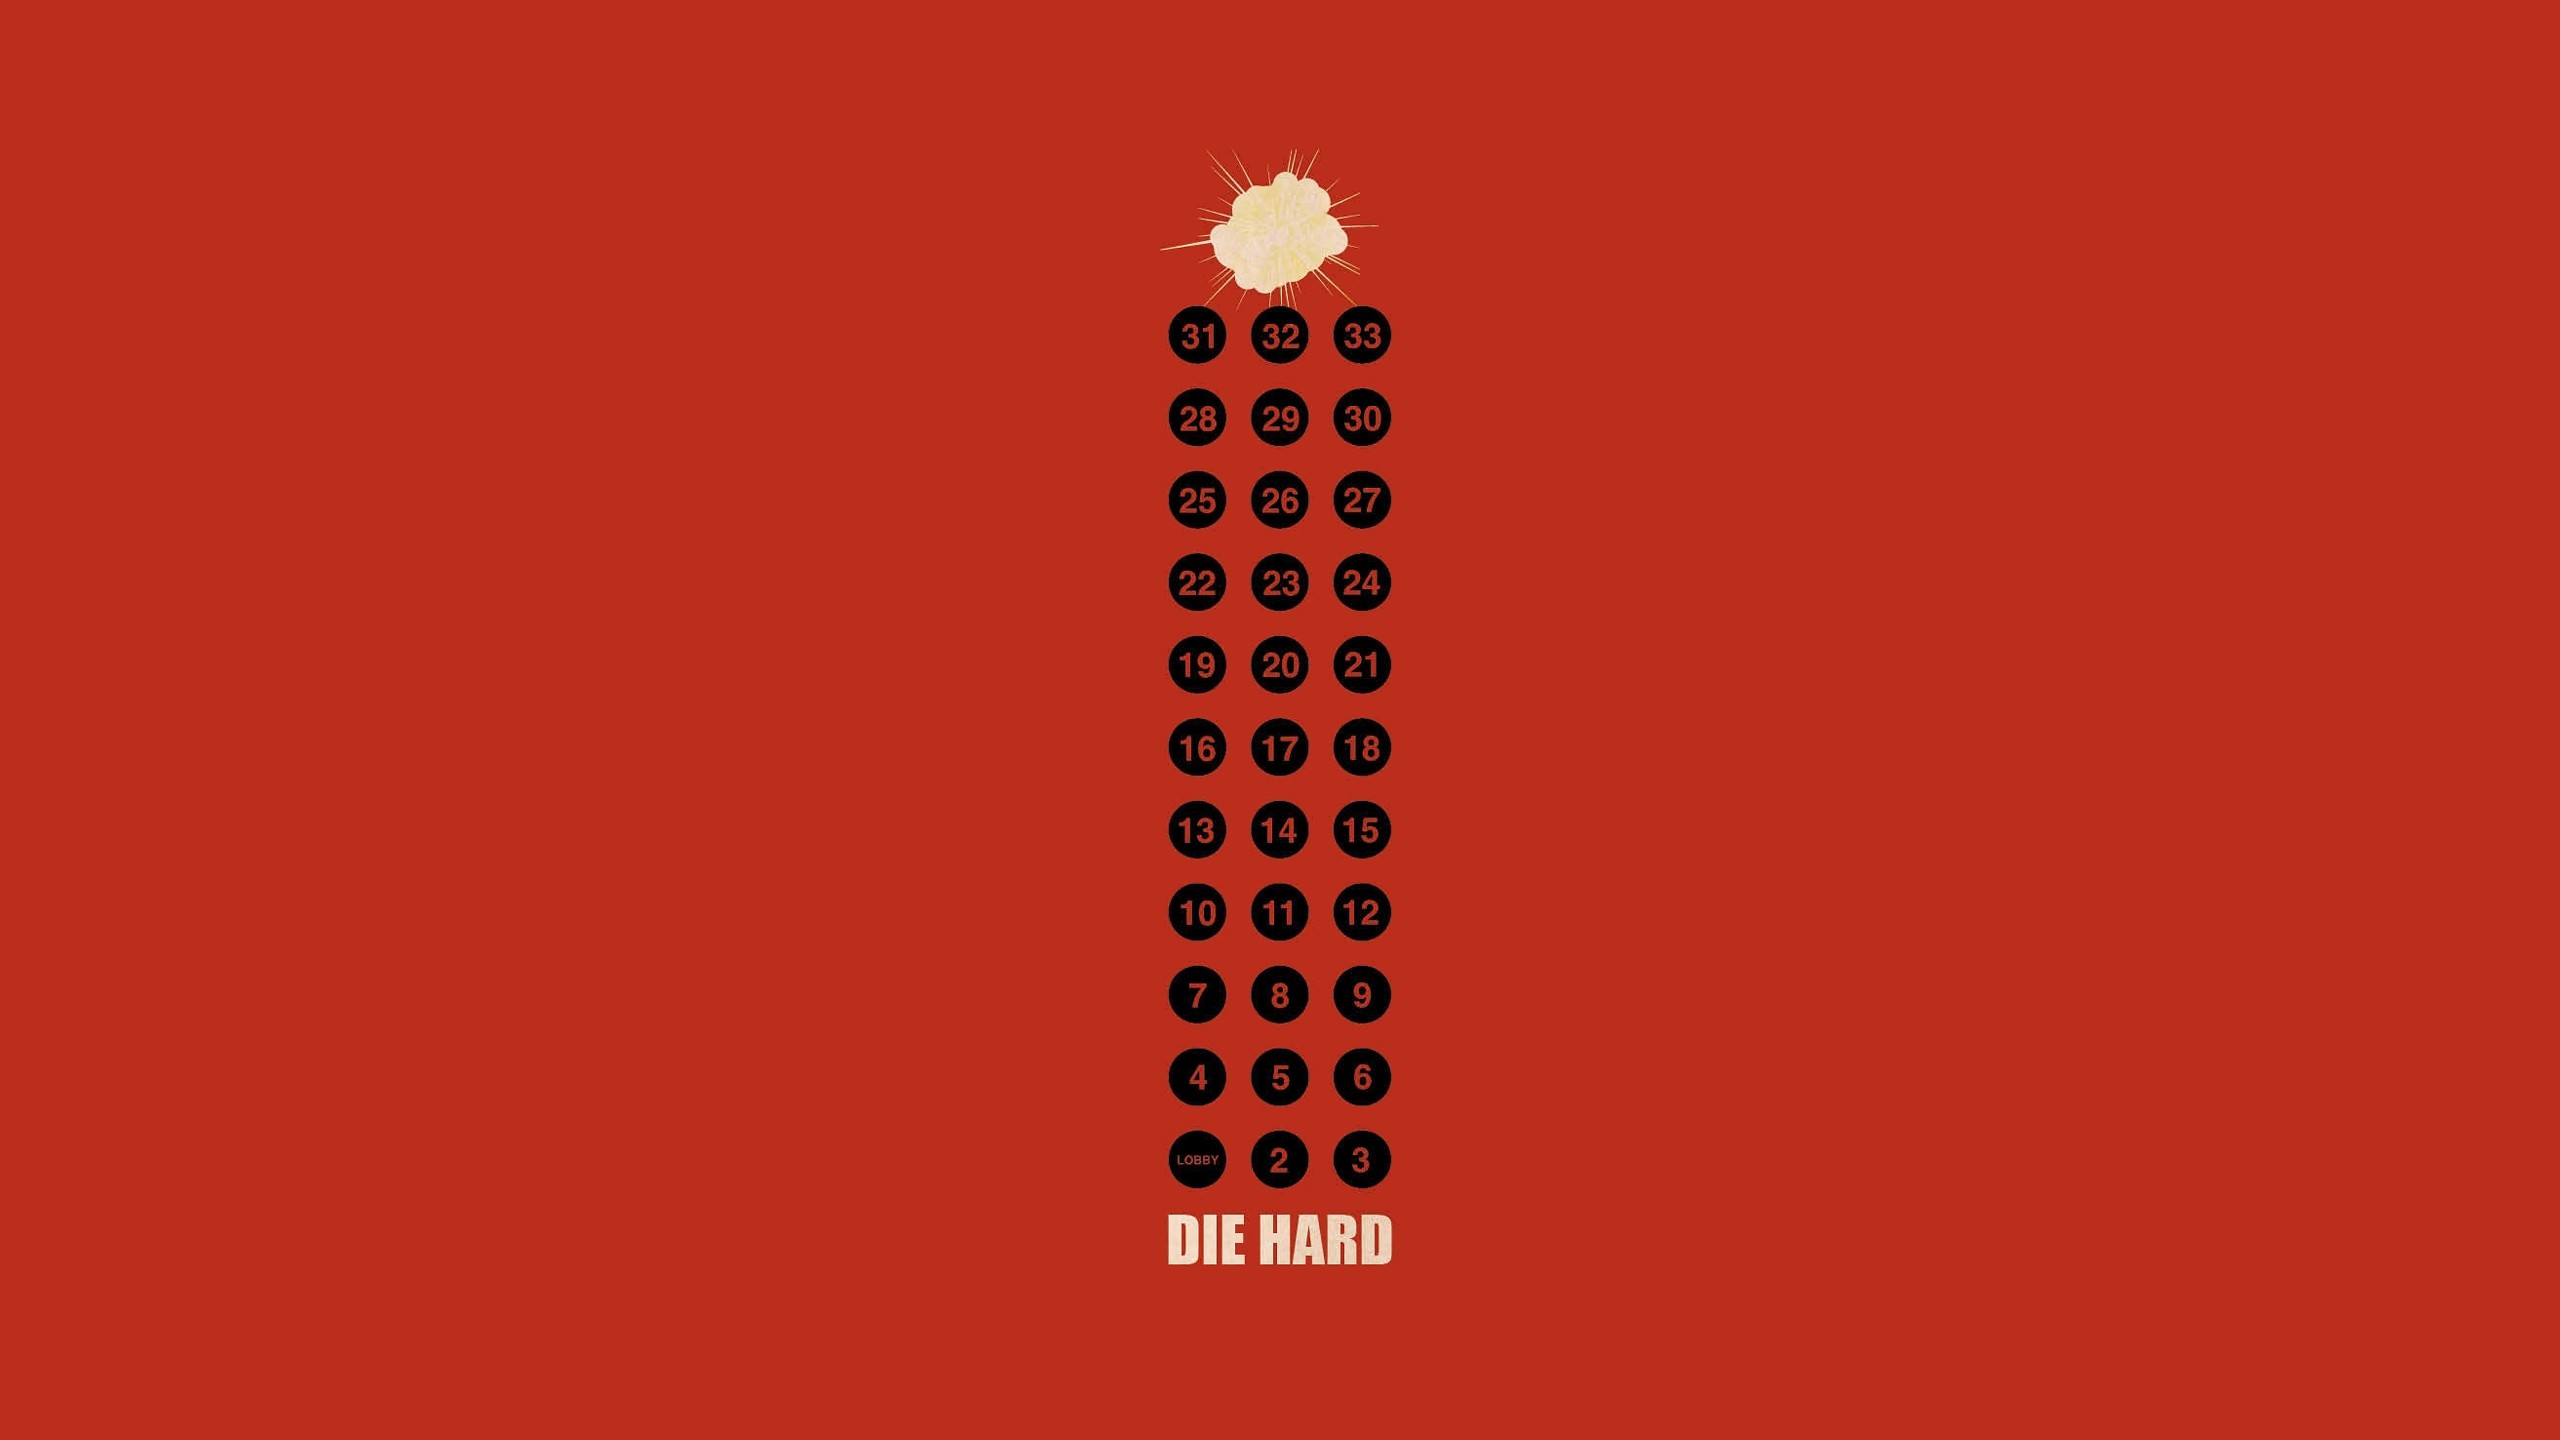 Die Hard Movies Artwork Minimalism Red Red Background Numbers 2560x1440